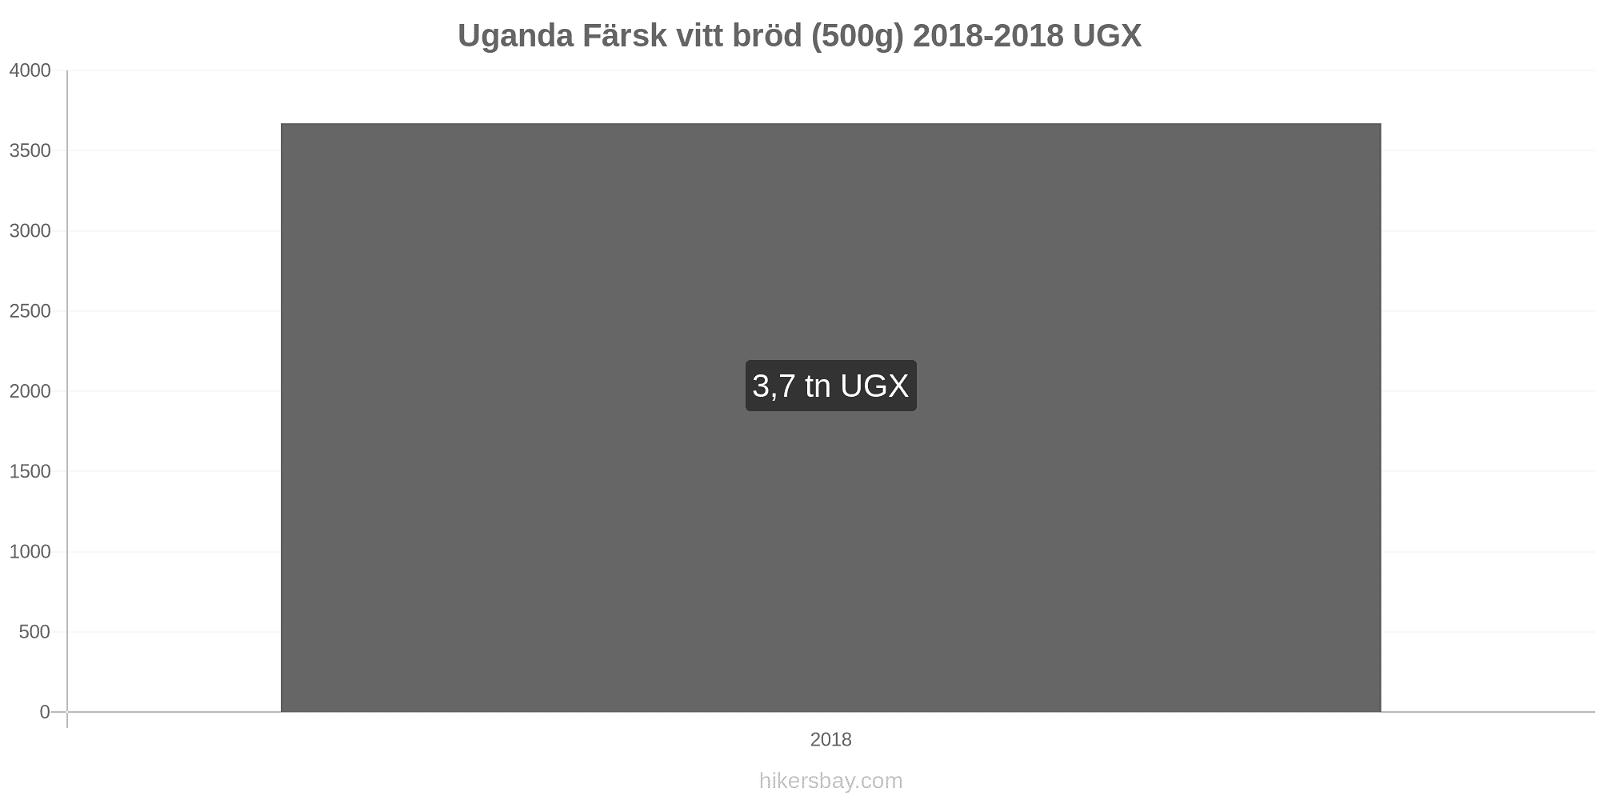 Uganda prisändringar Färsk vitt bröd (500g) hikersbay.com